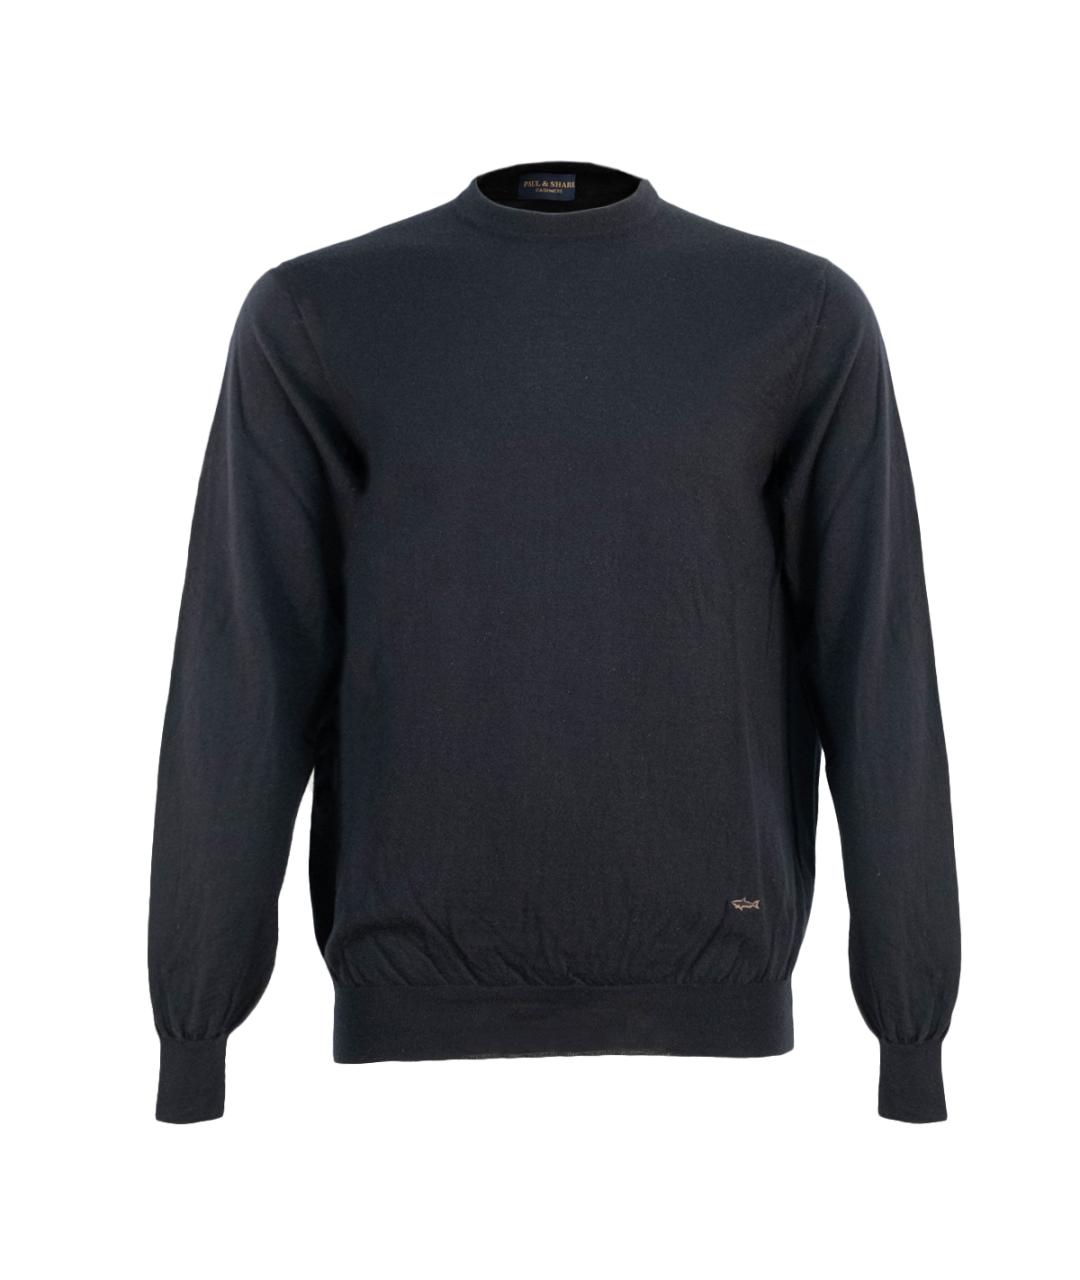 PAUL & SHARK Темно-синий кашемировый джемпер / свитер, фото 1